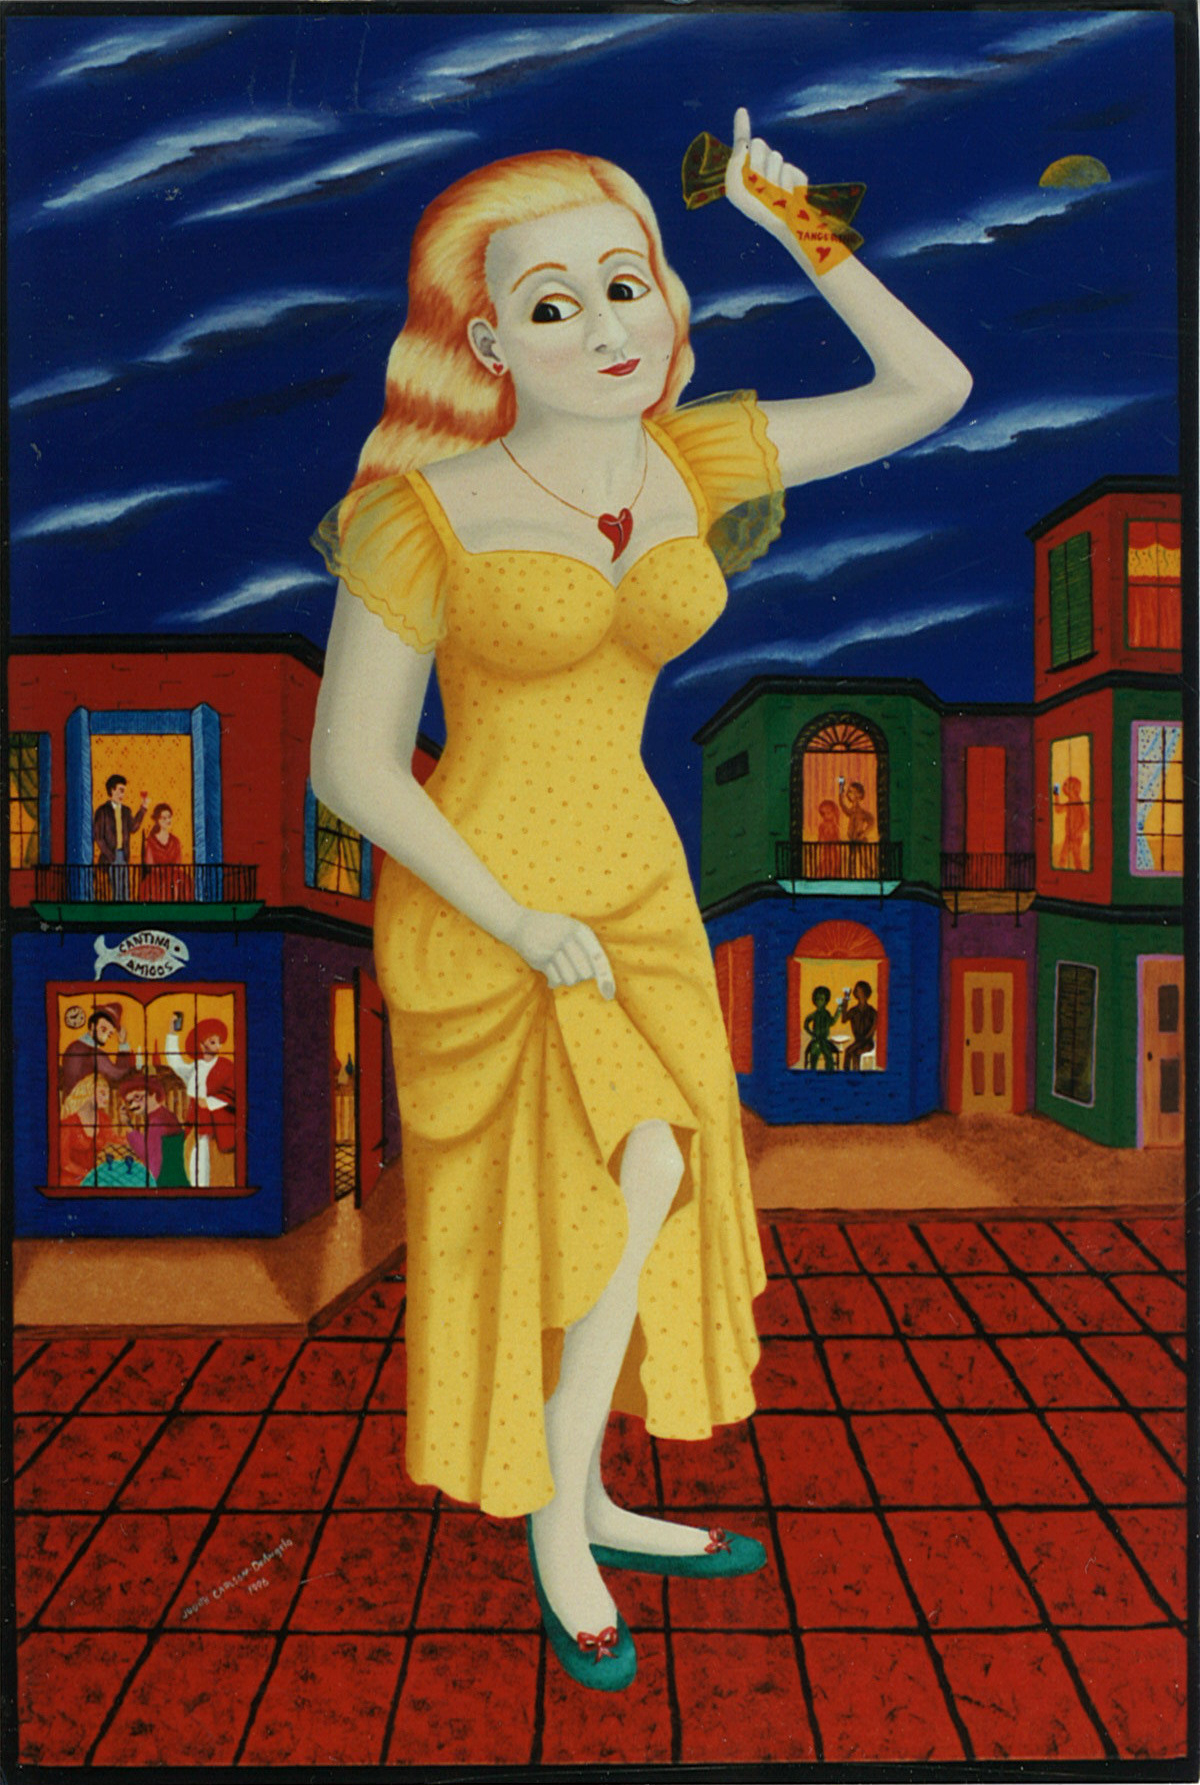 Tangerine Girl - Oil/Acrylic on canvas